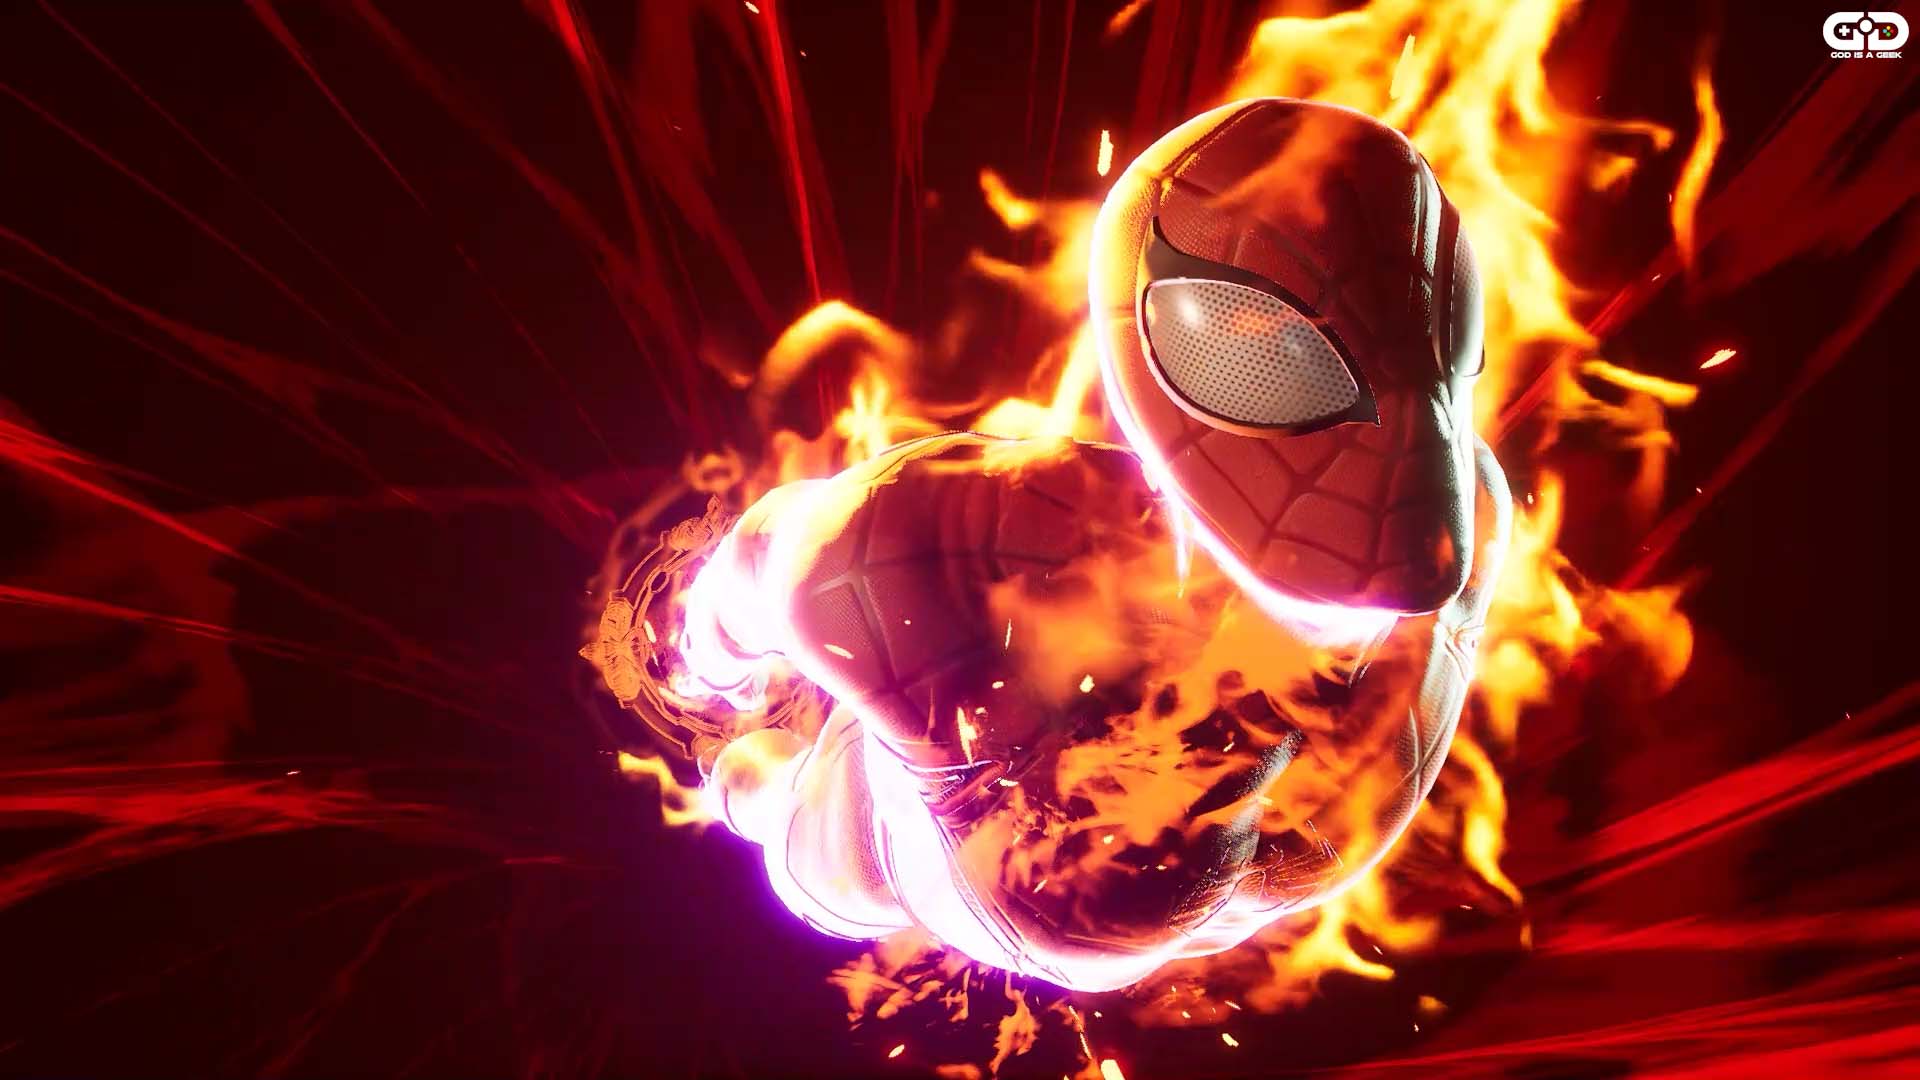 Marvel's Midnight Suns Spider-Man Suit - Spider-Man PC MODS 